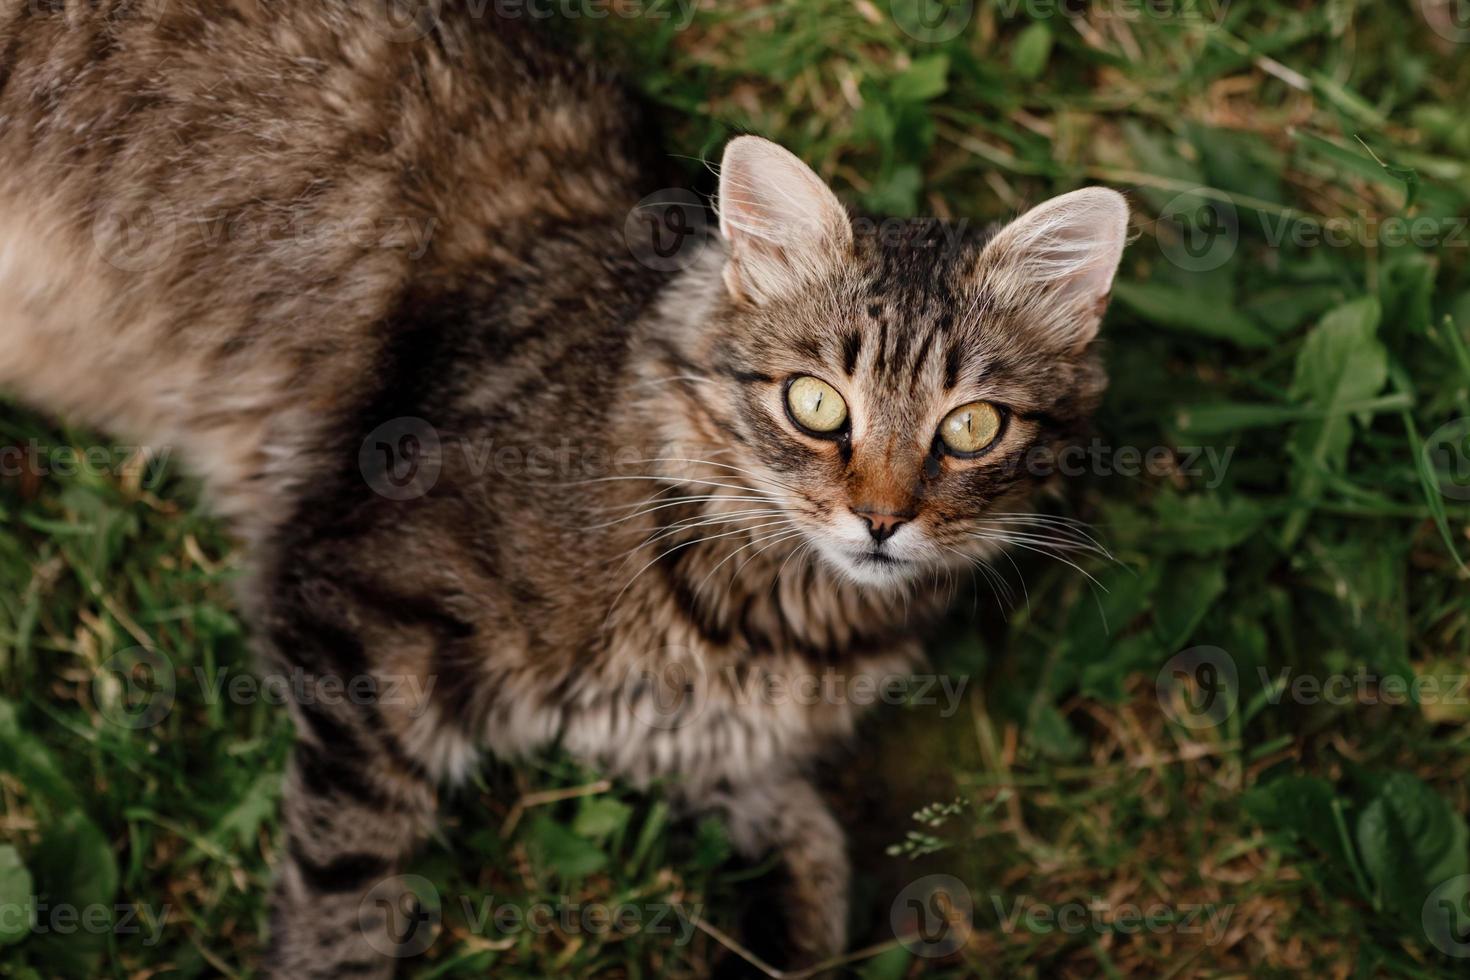 Katze, die auf dem Gras liegt. graue Katze mit schönen Augen. foto